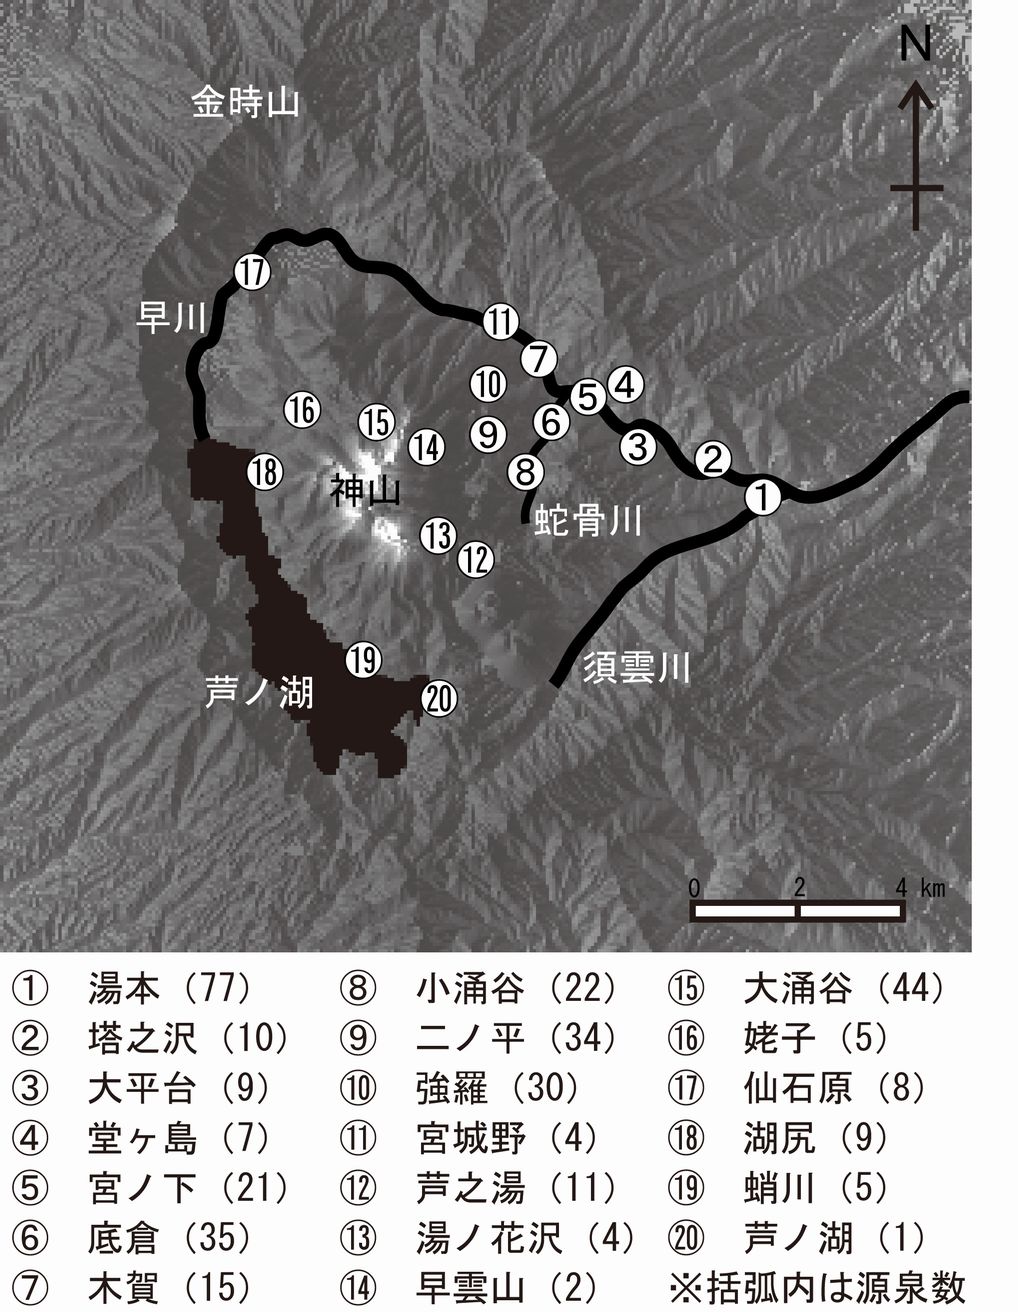 箱根二十湯と各温泉場の源泉数。源泉数は小田原保健福祉事務所による2012年3月末のデータ。